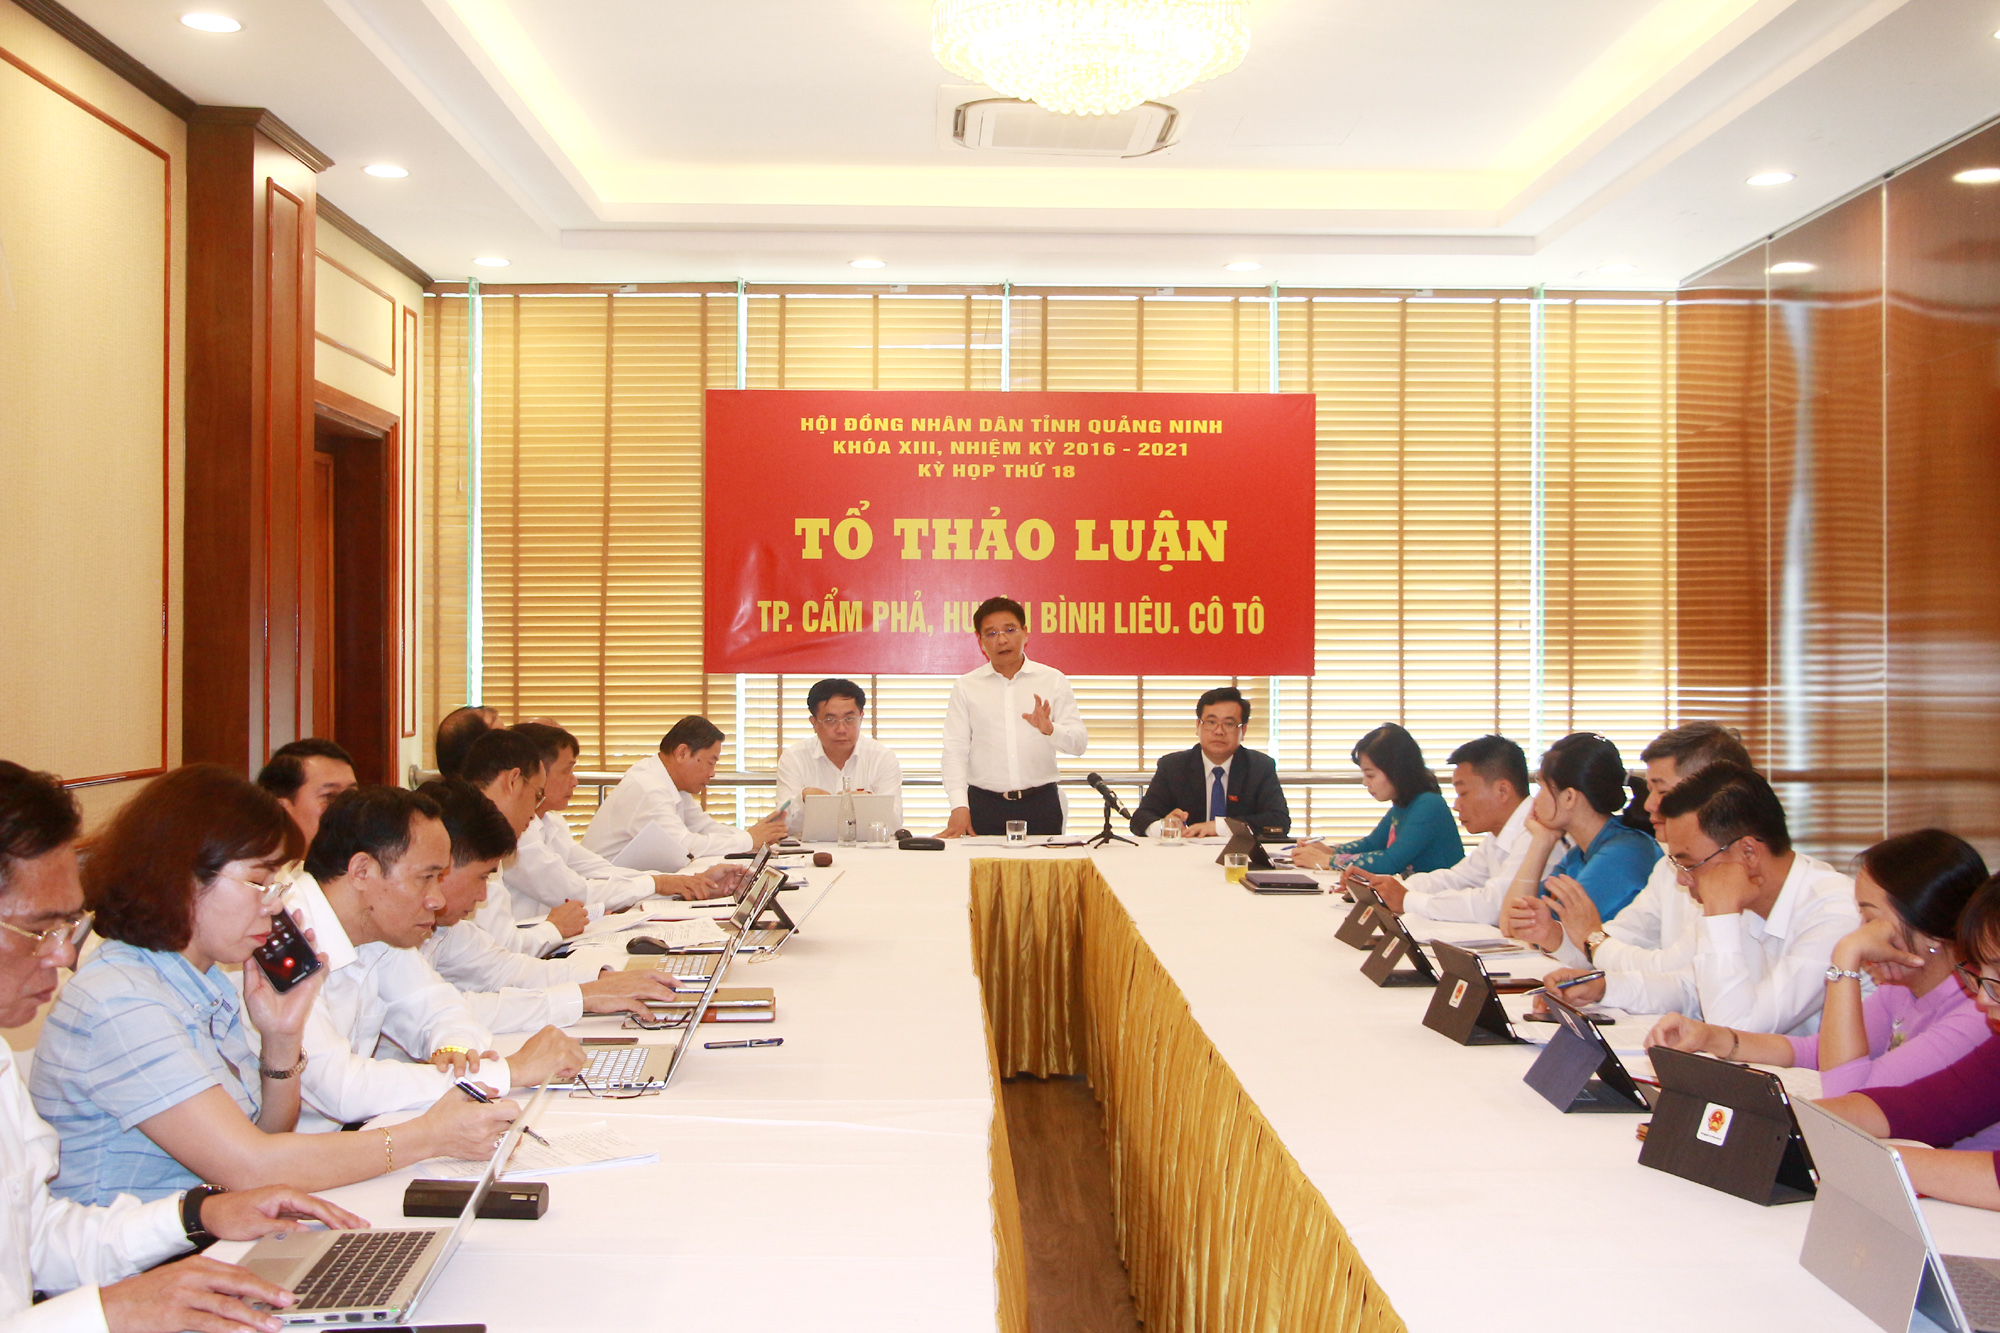 Đồng chí Nguyễn Văn Thắng, Chủ tịch UBND tỉnh tham gia phát biểu tại tổ thảo luận số 4.